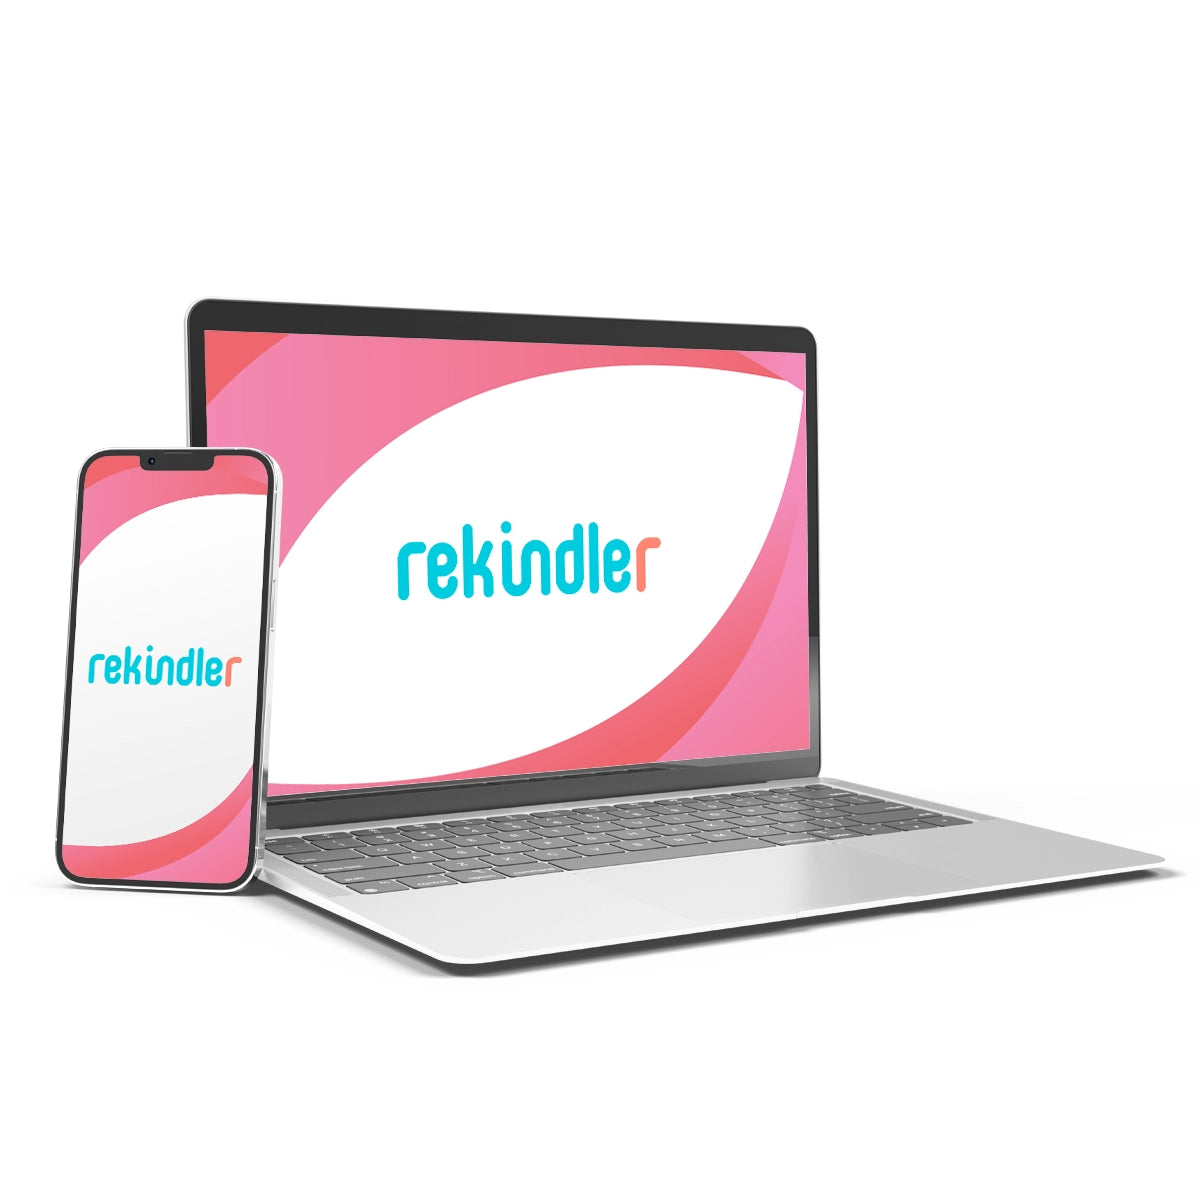 Rekindler.com